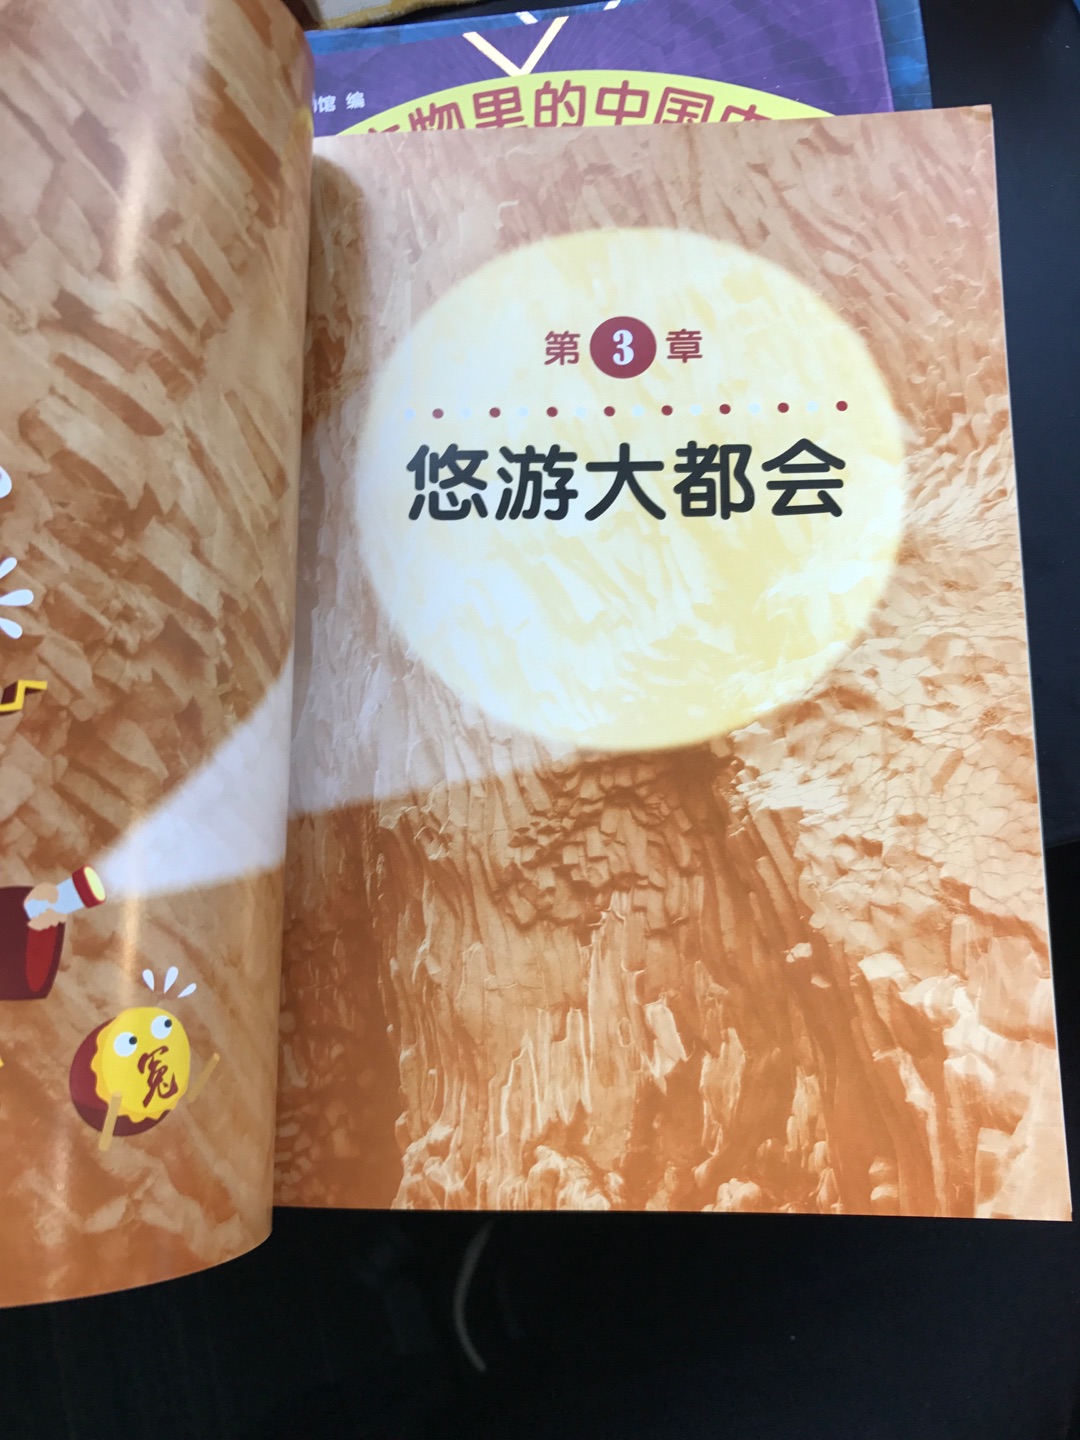 买了一套8本，丛书清晰介绍了文物和历史，让小朋友快速进入中华文明和文化的世界。内容引人入胜，都是能够朗朗上口的知识。